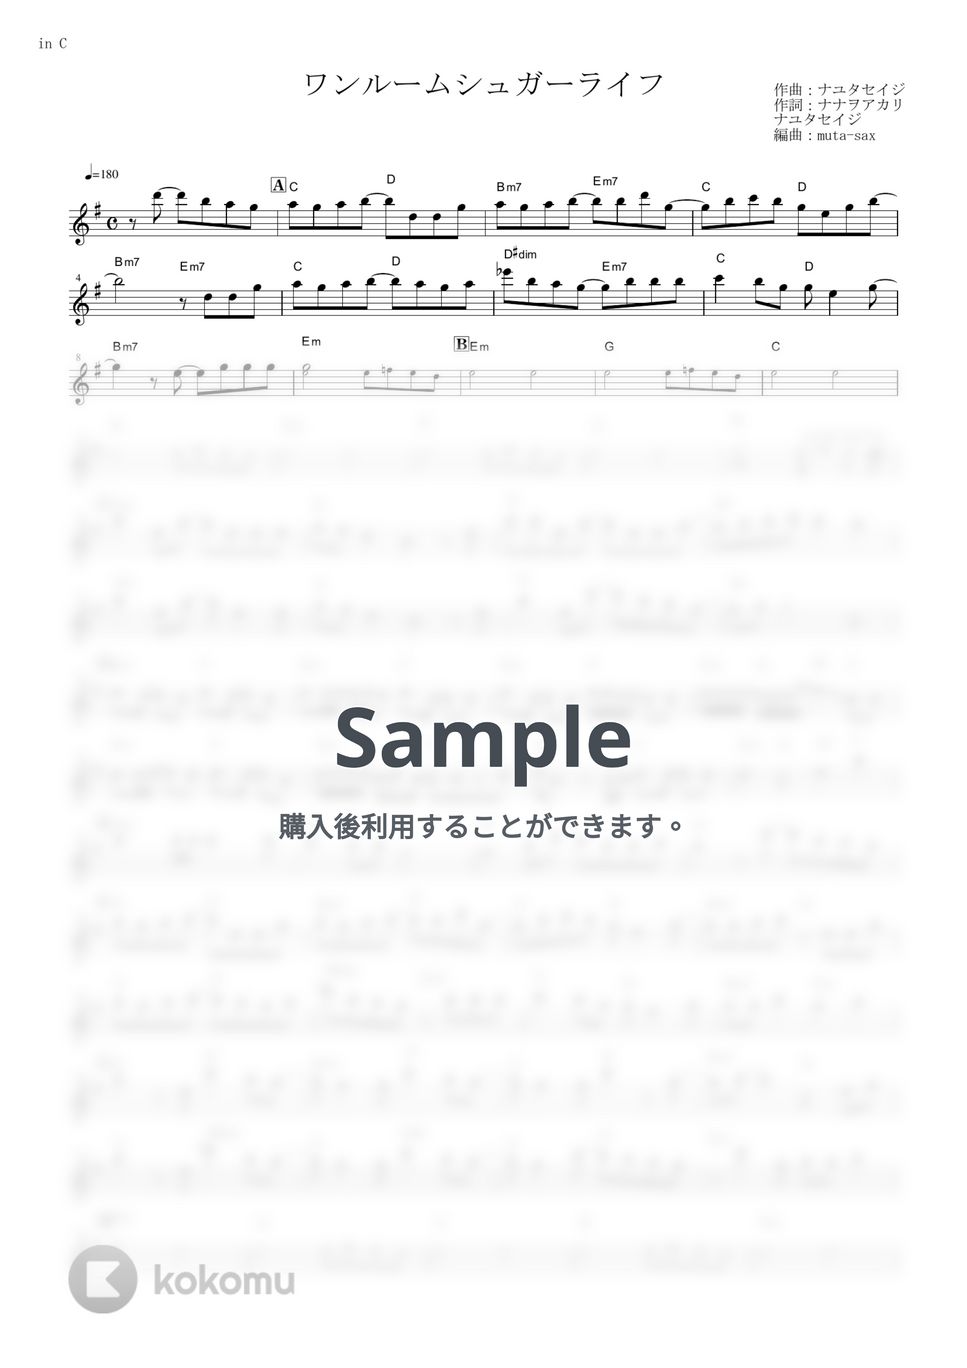 ナナヲアカリ - ワンルームシュガーライフ (『ハッピーシュガーライフ』 / in C) by muta-sax